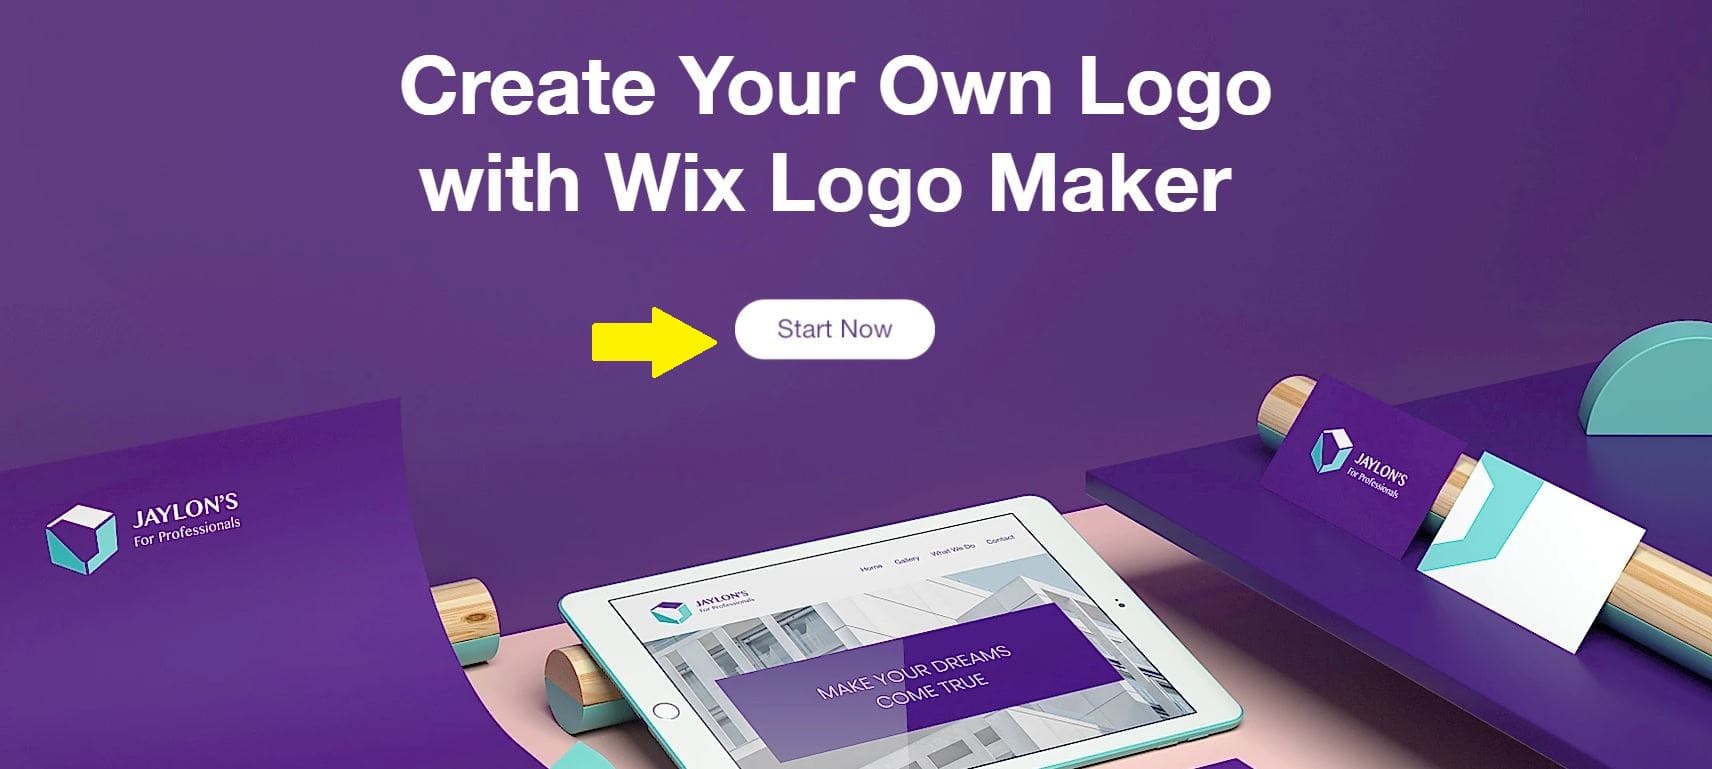 Ảnh chụp màn hình Wix Logo Maker - Bắt đầu ngay bây giờ